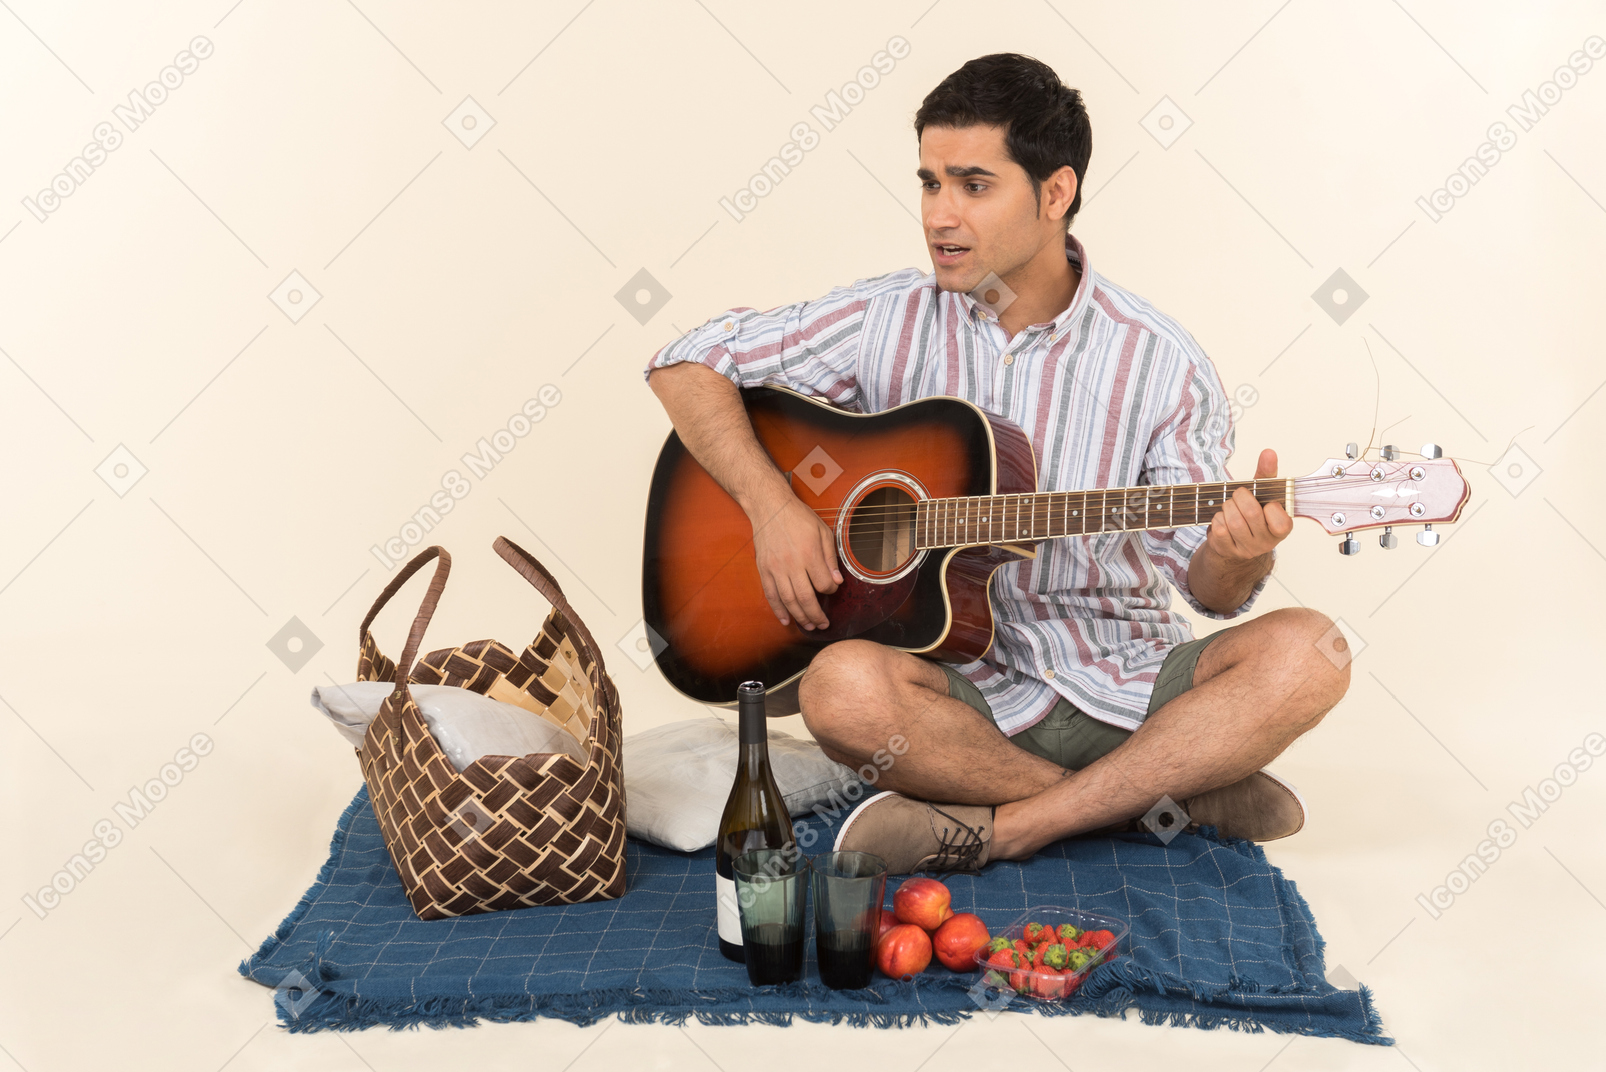 담요에 피크닉 바구니 근처에 앉아 기타를 연주하는 젊은 백인 남자